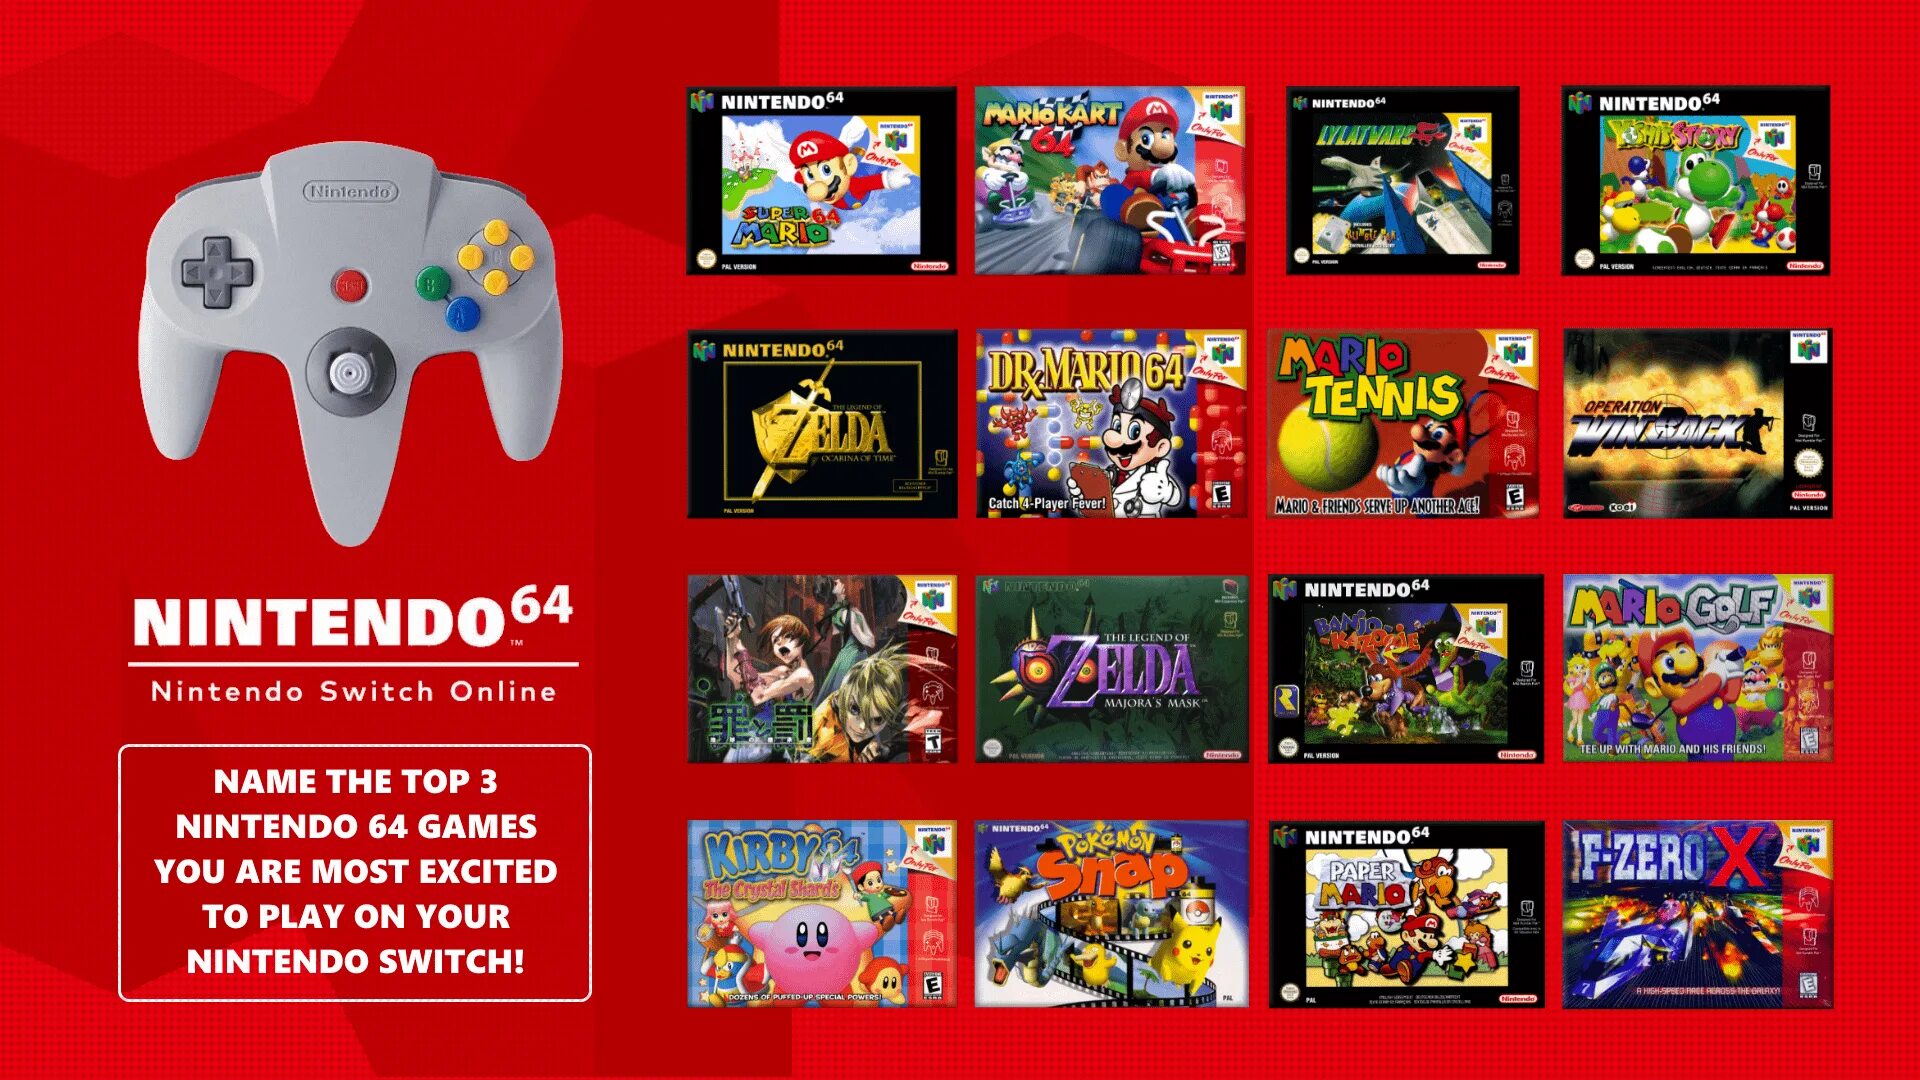 Nintendo 64 перевод. Nintendo Switch Nintendo 64. Игры для Нинтендо 64 приставки. Nintendo 64 снизу.